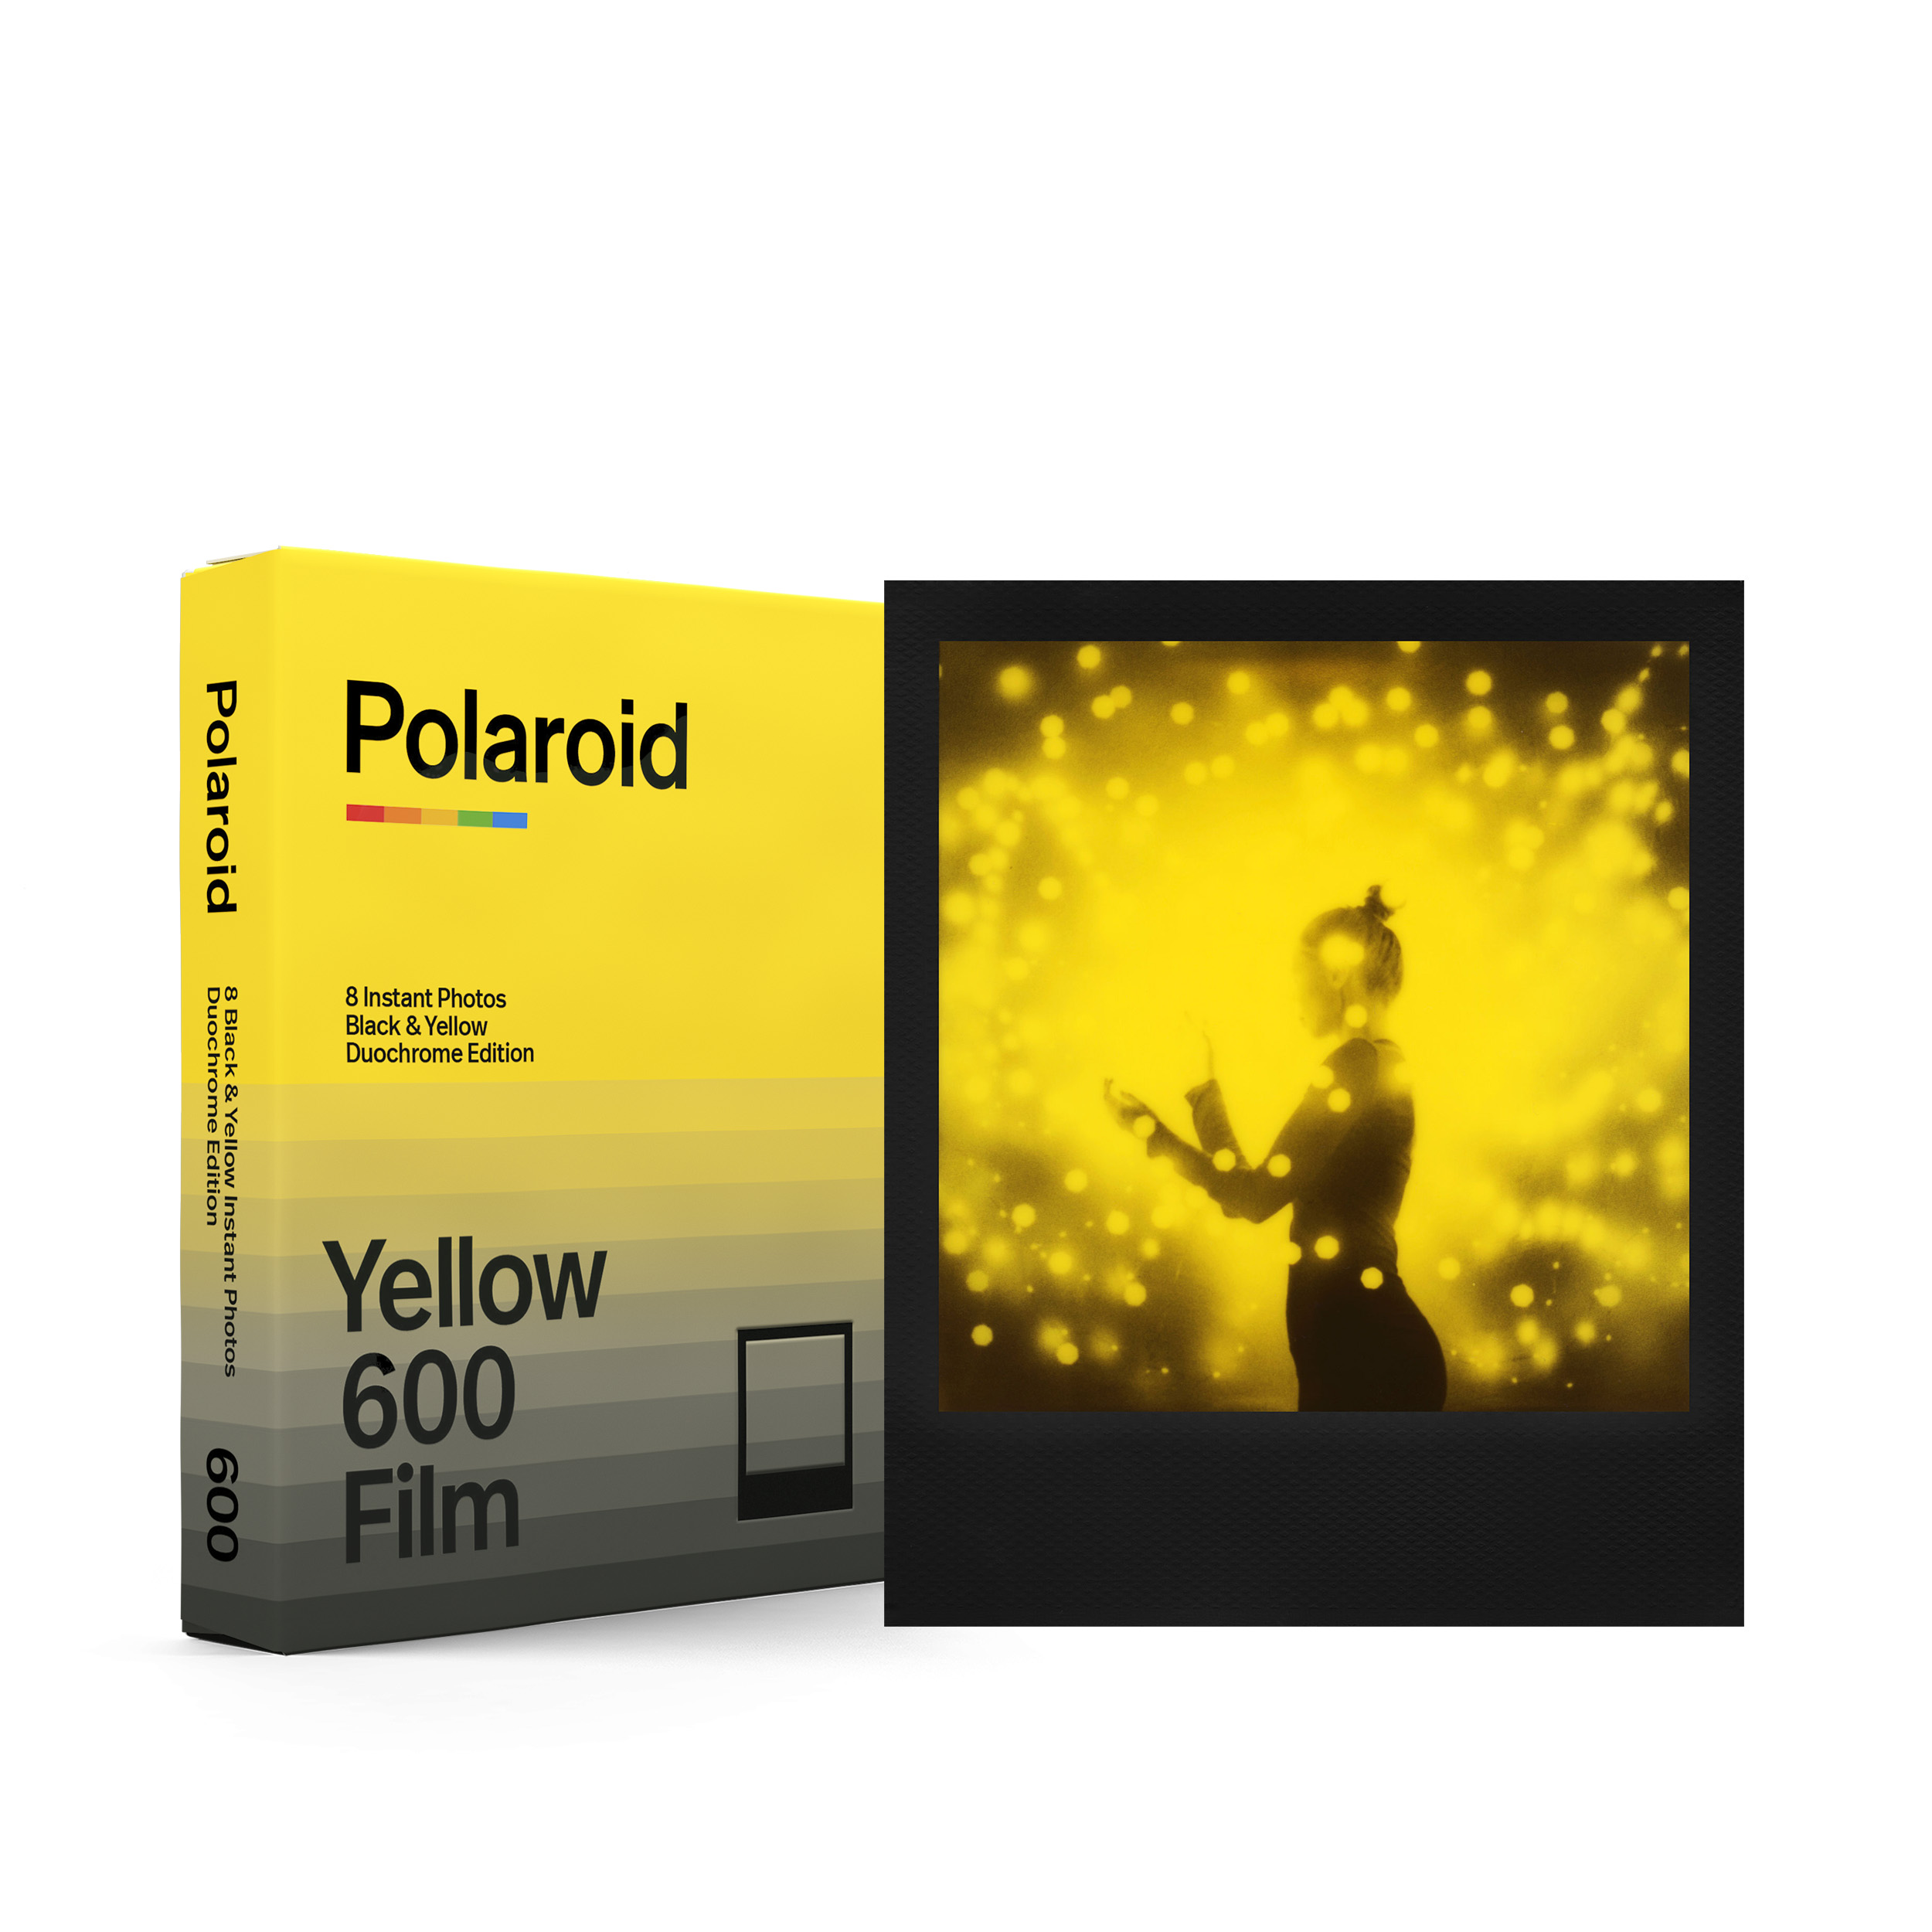 ฟิล์ม 600 Black & Yellow - Duochrome Edition